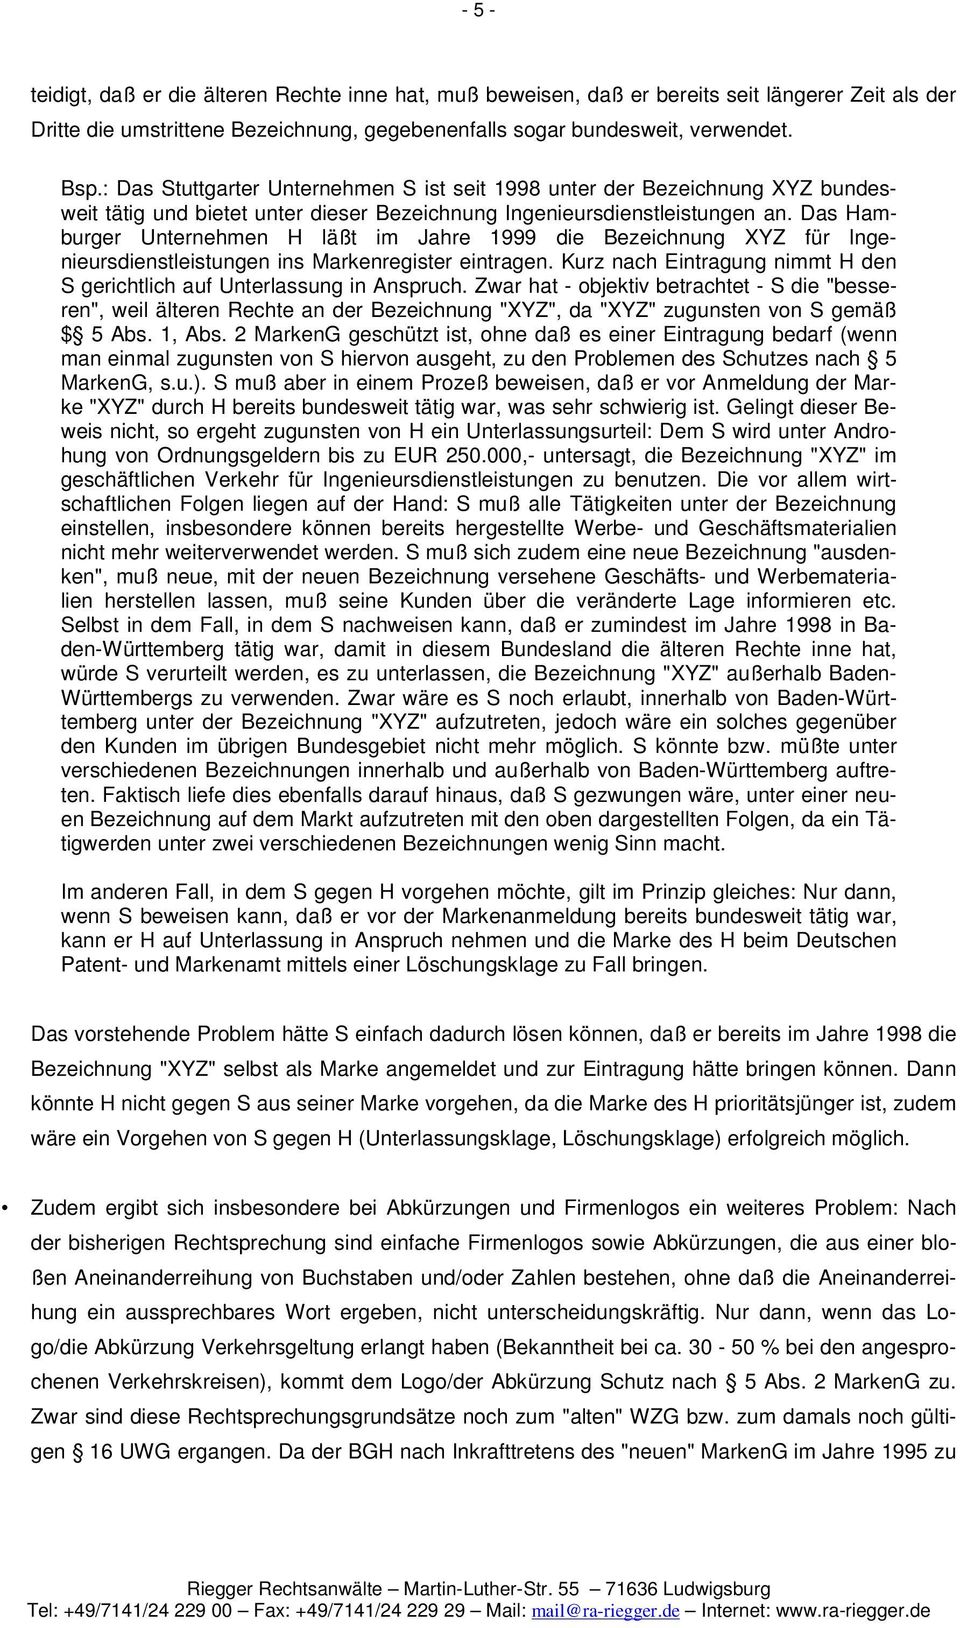 Das Hamburger Unternehmen H läßt im Jahre 1999 die Bezeichnung XYZ für Ingenieursdienstleistungen ins Markenregister eintragen.